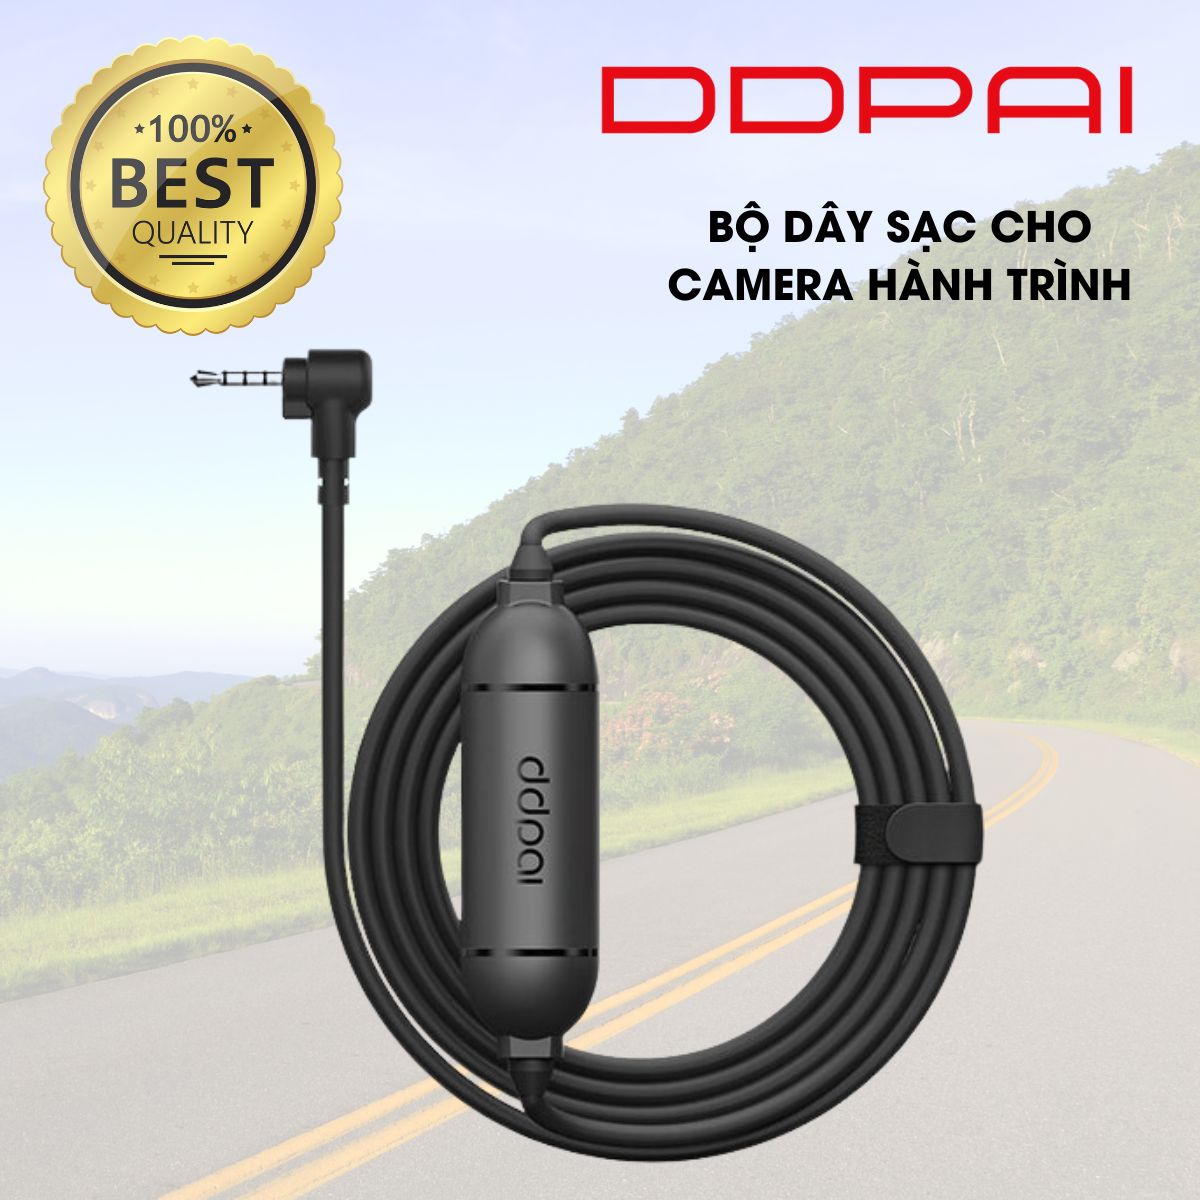 Bộ dây sạc ô tô dành cho camera hành trình DDPai Mini 3 dây cáp dài 3.5m